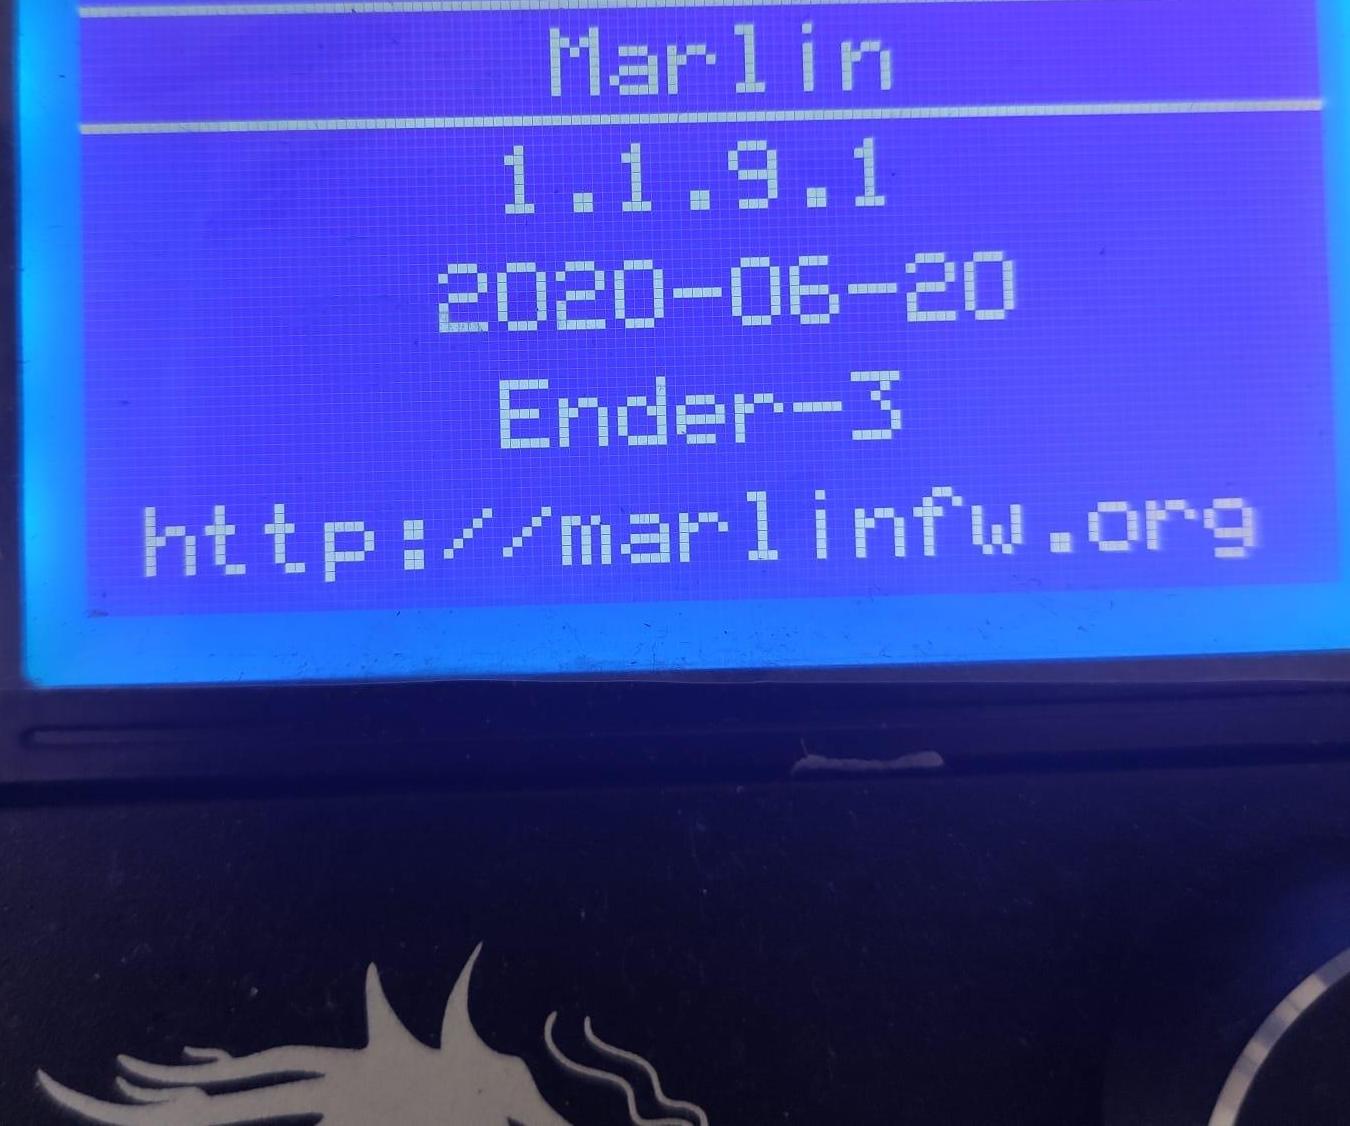 Burn Bootloader and Firmware on Ender3